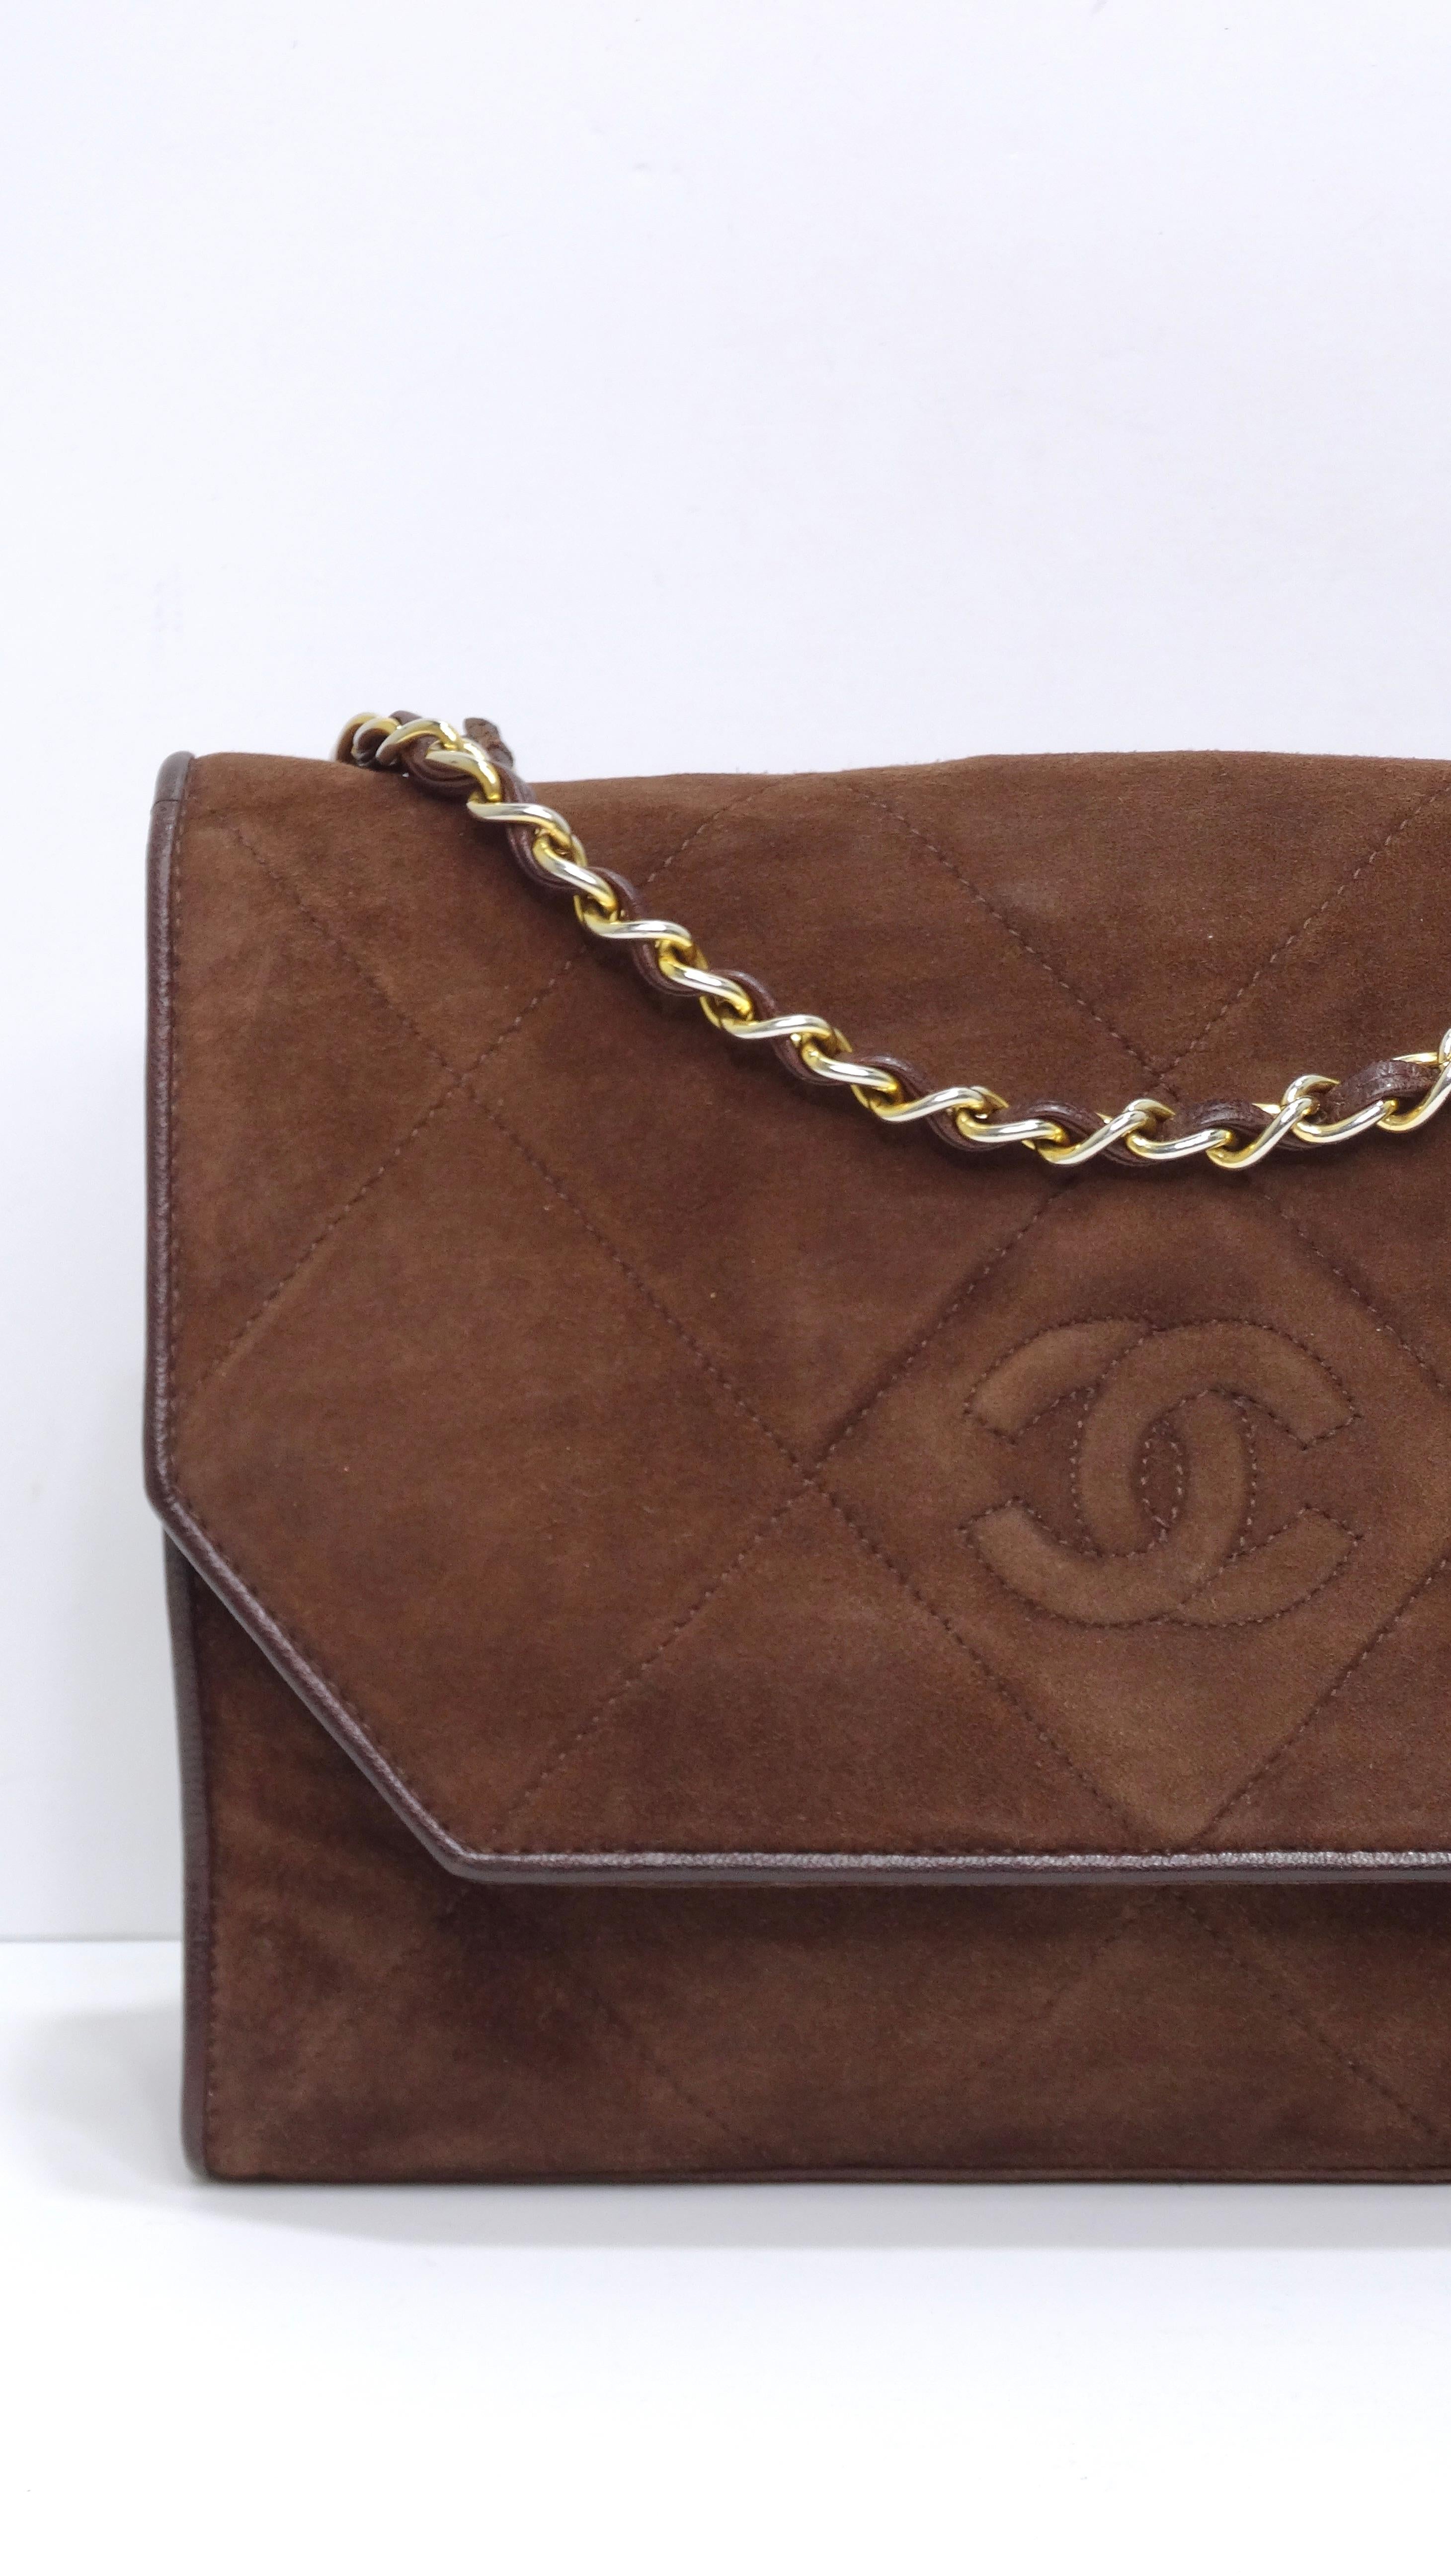 Dieses Chanel-Wildleder ist Ihr neues Lieblings-Sammlerstück! Diese Tasche begleitet Sie durch den Alltag, denn sie hat einen geräumigen Innenraum und bietet Platz für Brieftasche, Schlüssel, Telefon und andere kleine Gegenstände. Sie besteht aus